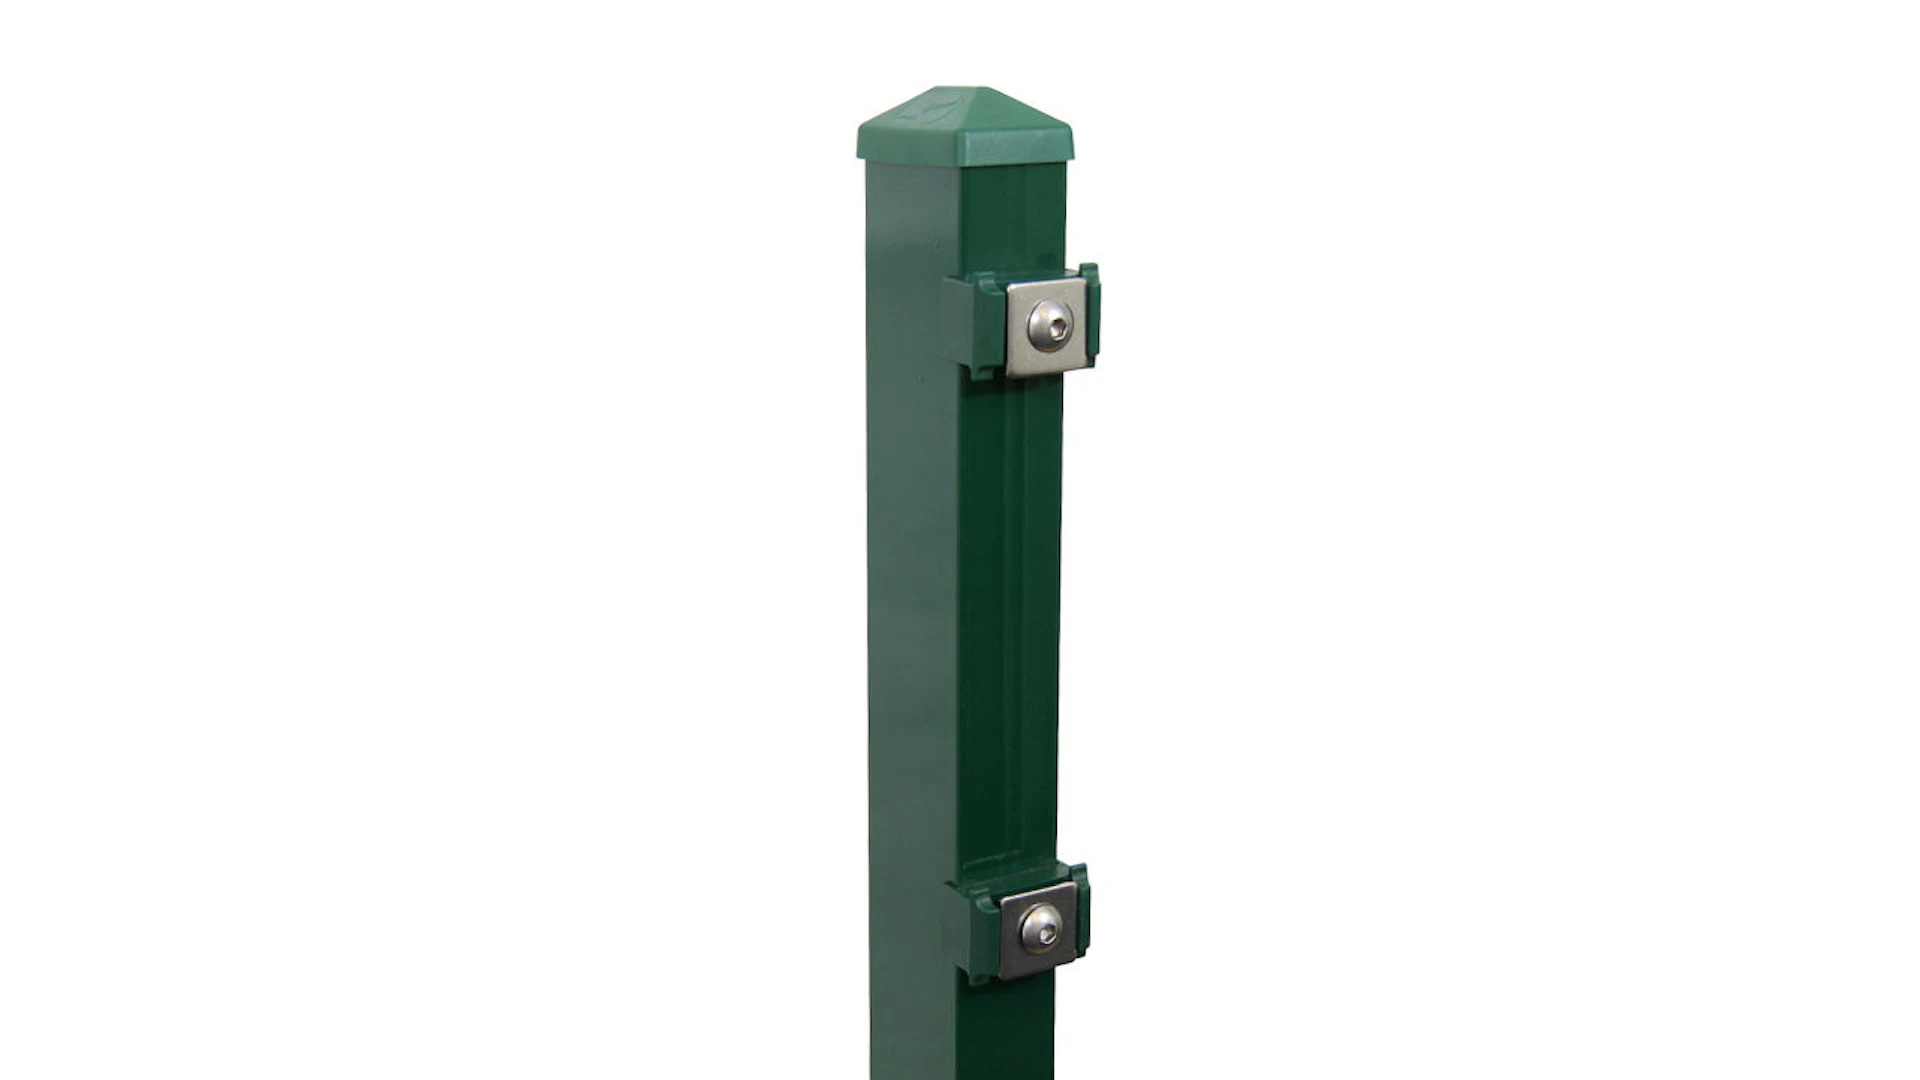 Poteau de clôture de type P vert mousse pour clôture à double maille - hauteur de la clôture 830 mm